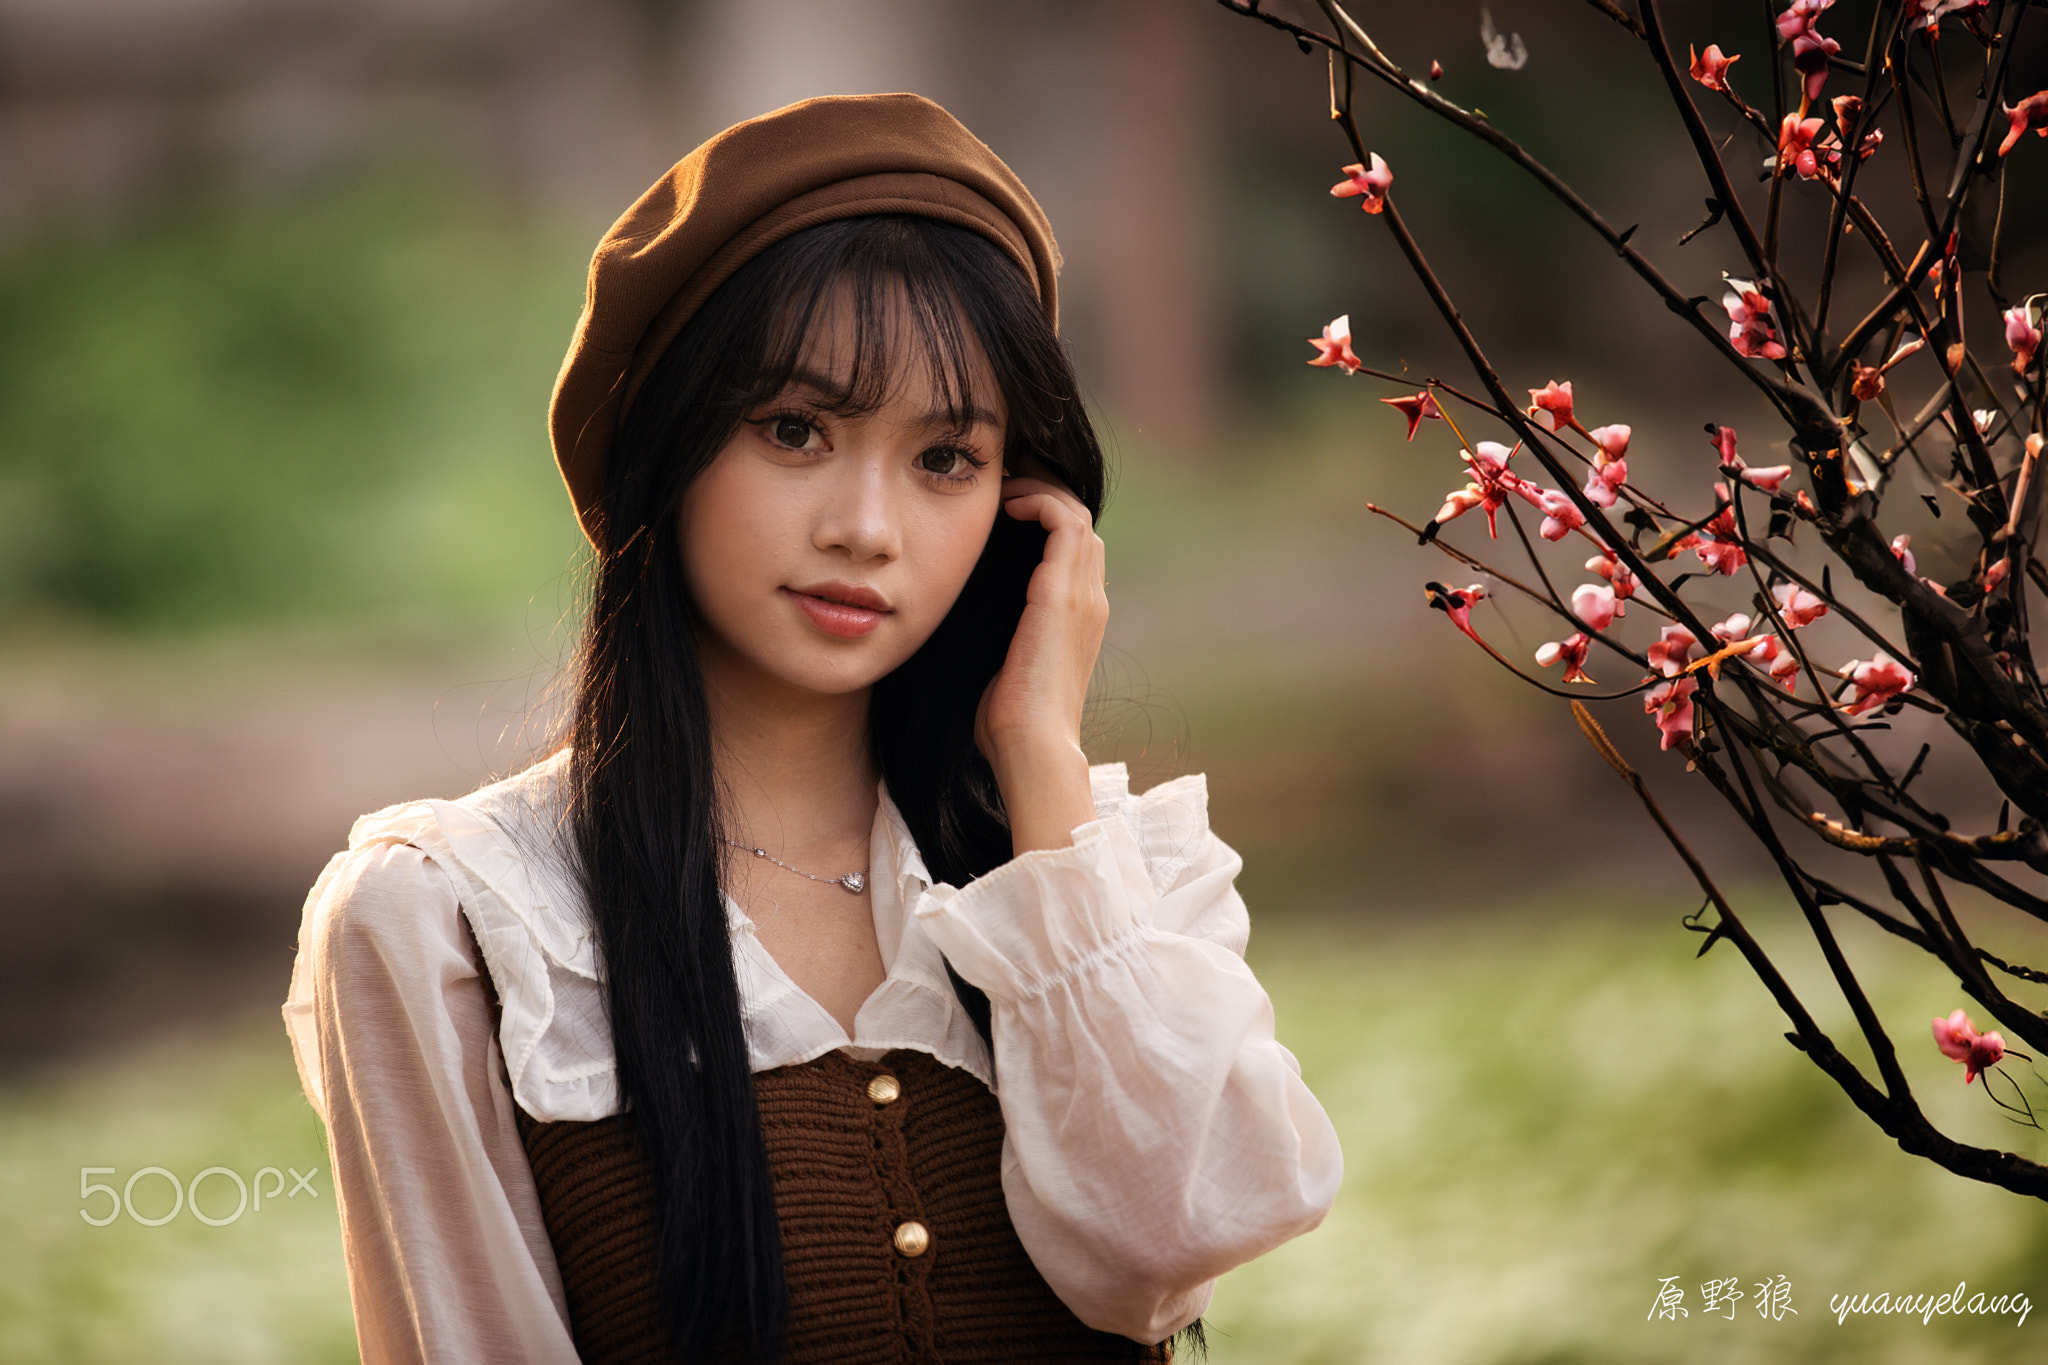 Yuan Yelang Women Asian Portrait Hat Sprout 2048x1365